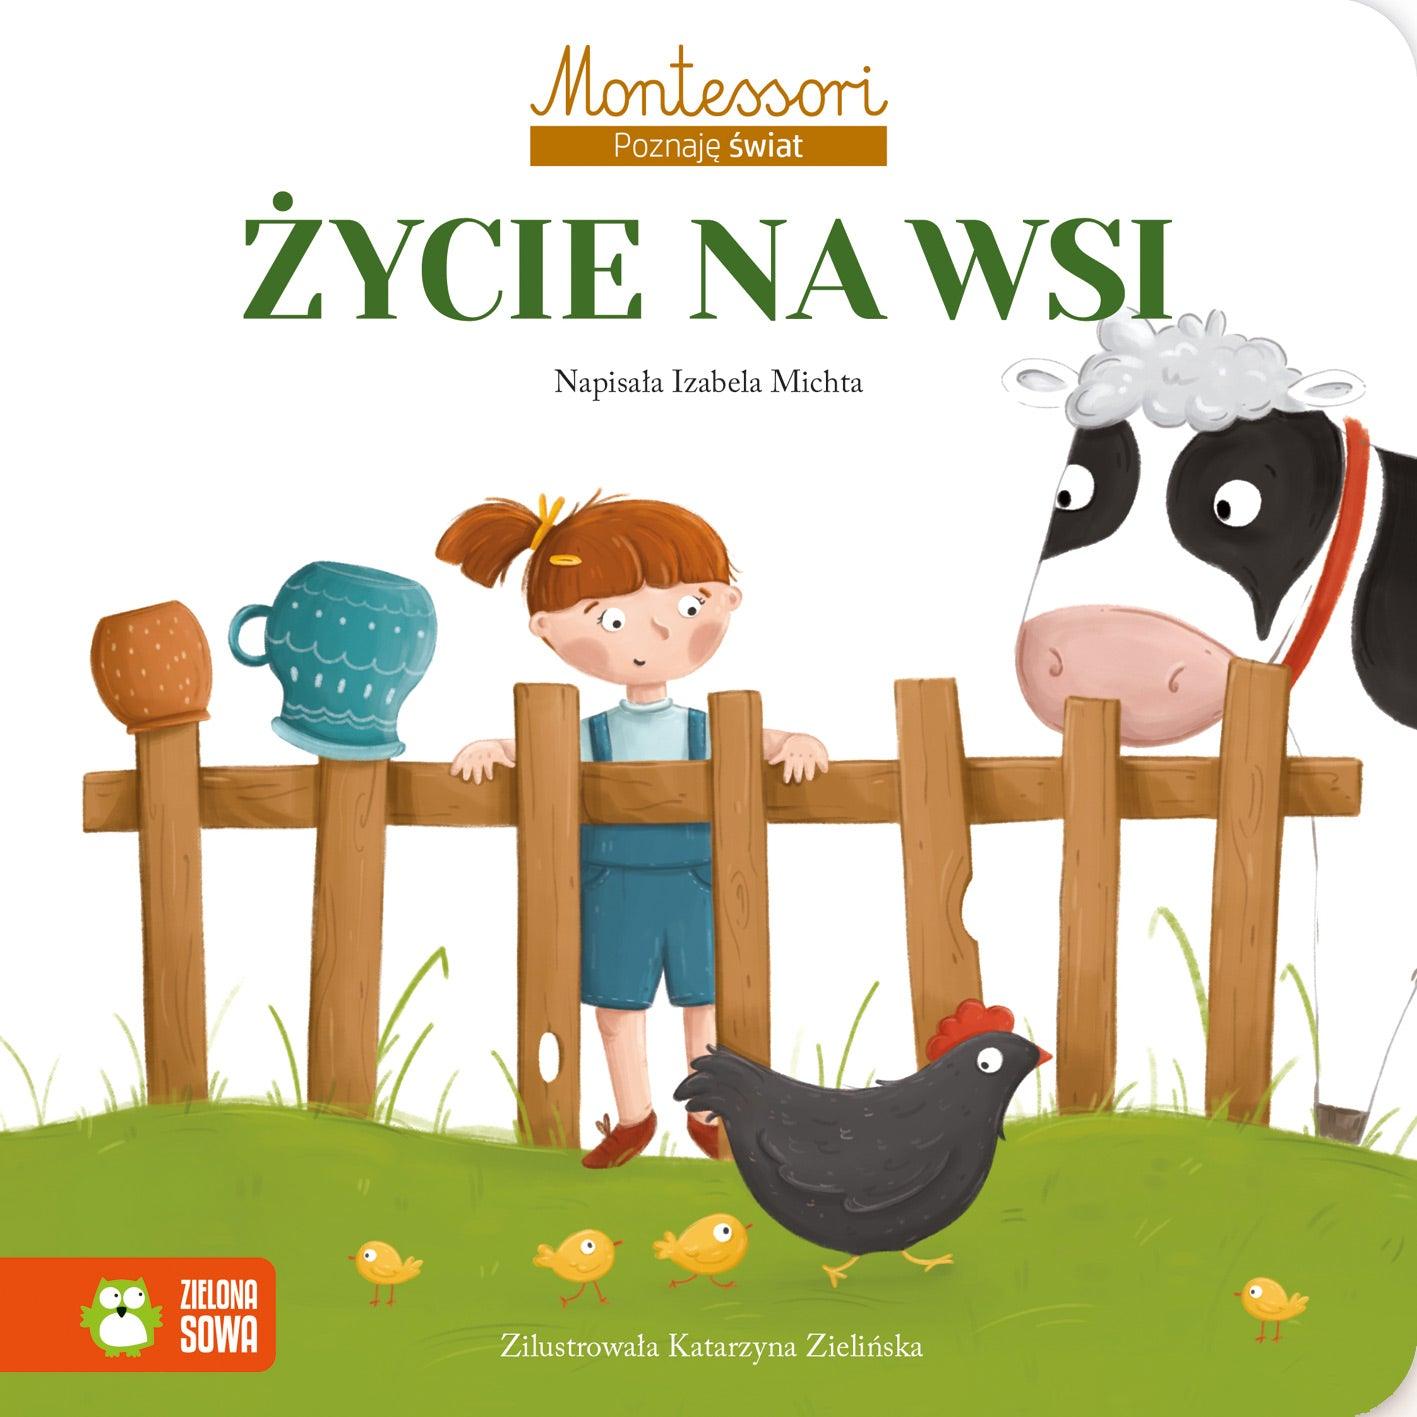 Zielona Sowa: Poznaję świat - Montessori. Życie na wsi - Noski Noski